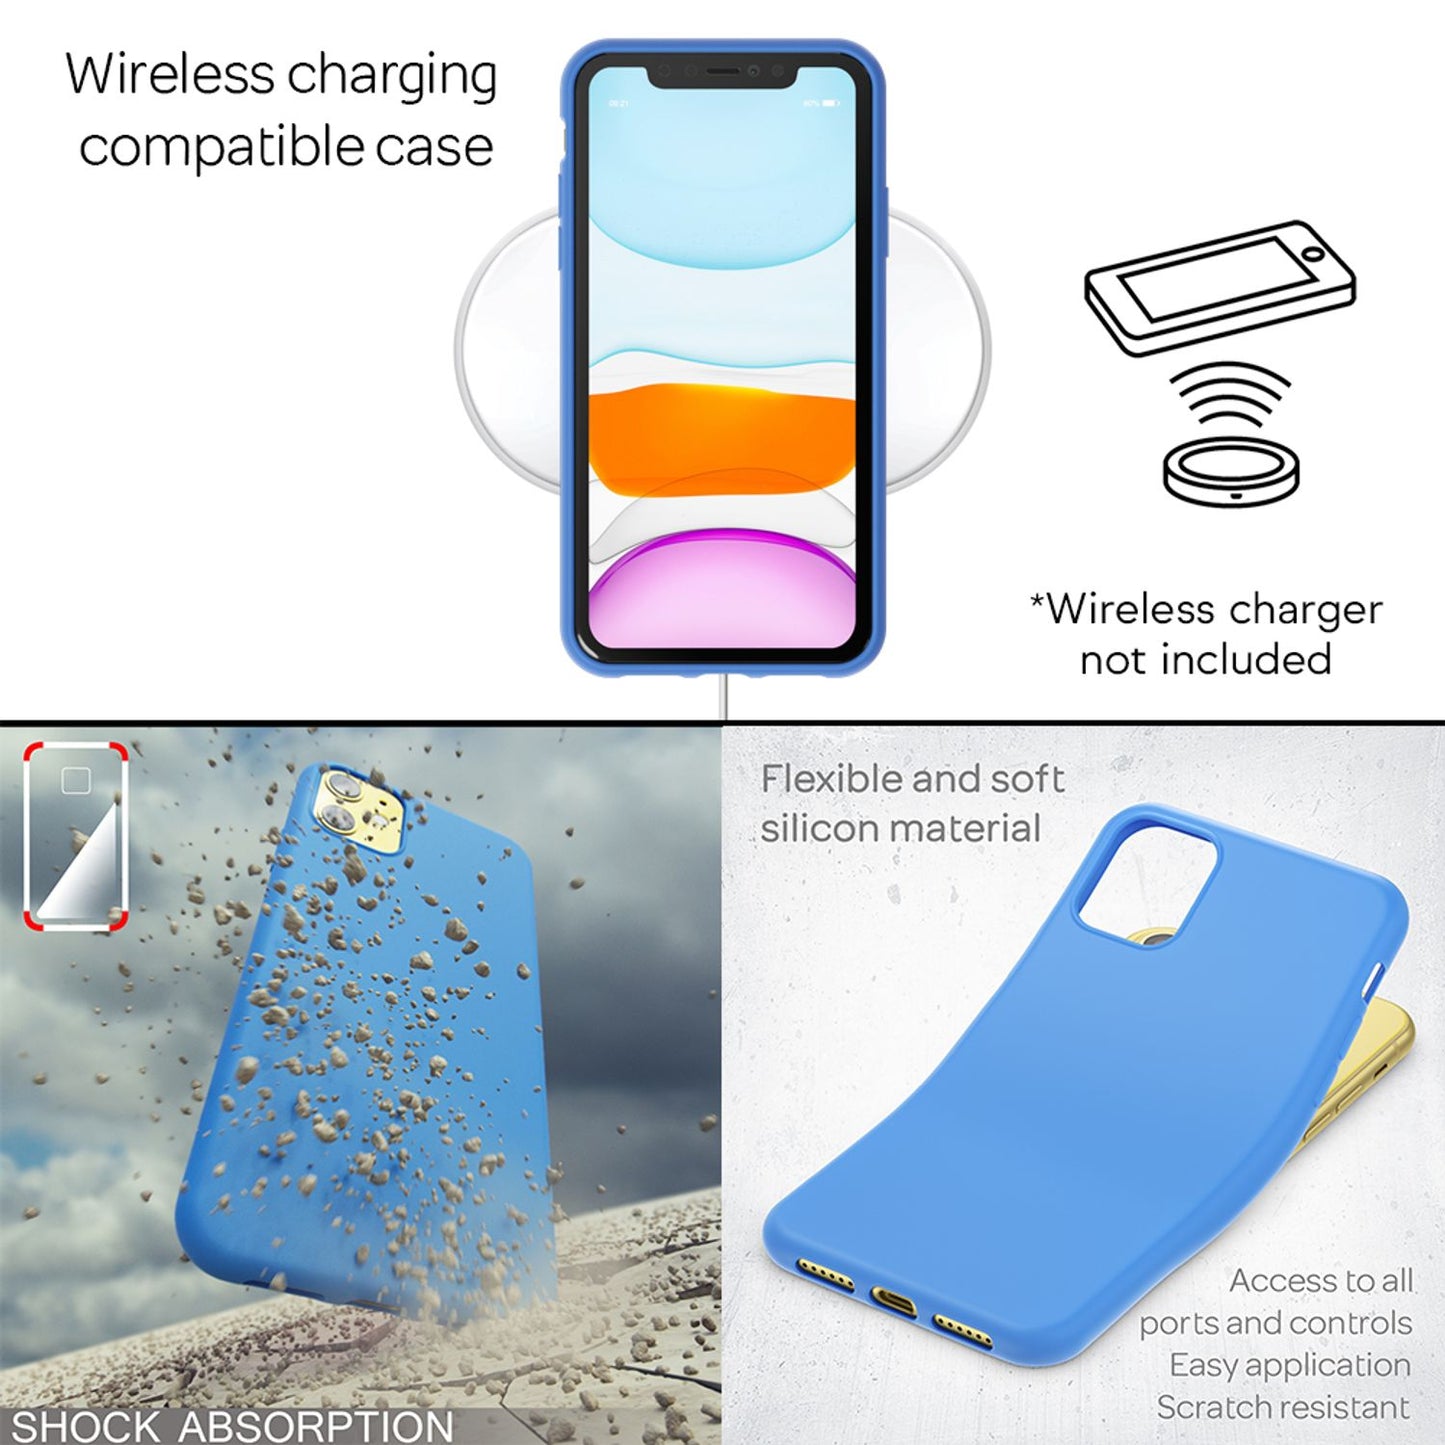 NALIA Neon Handy Hülle für iPhone 11, Soft case & Silikon Bumper Cover Schutz